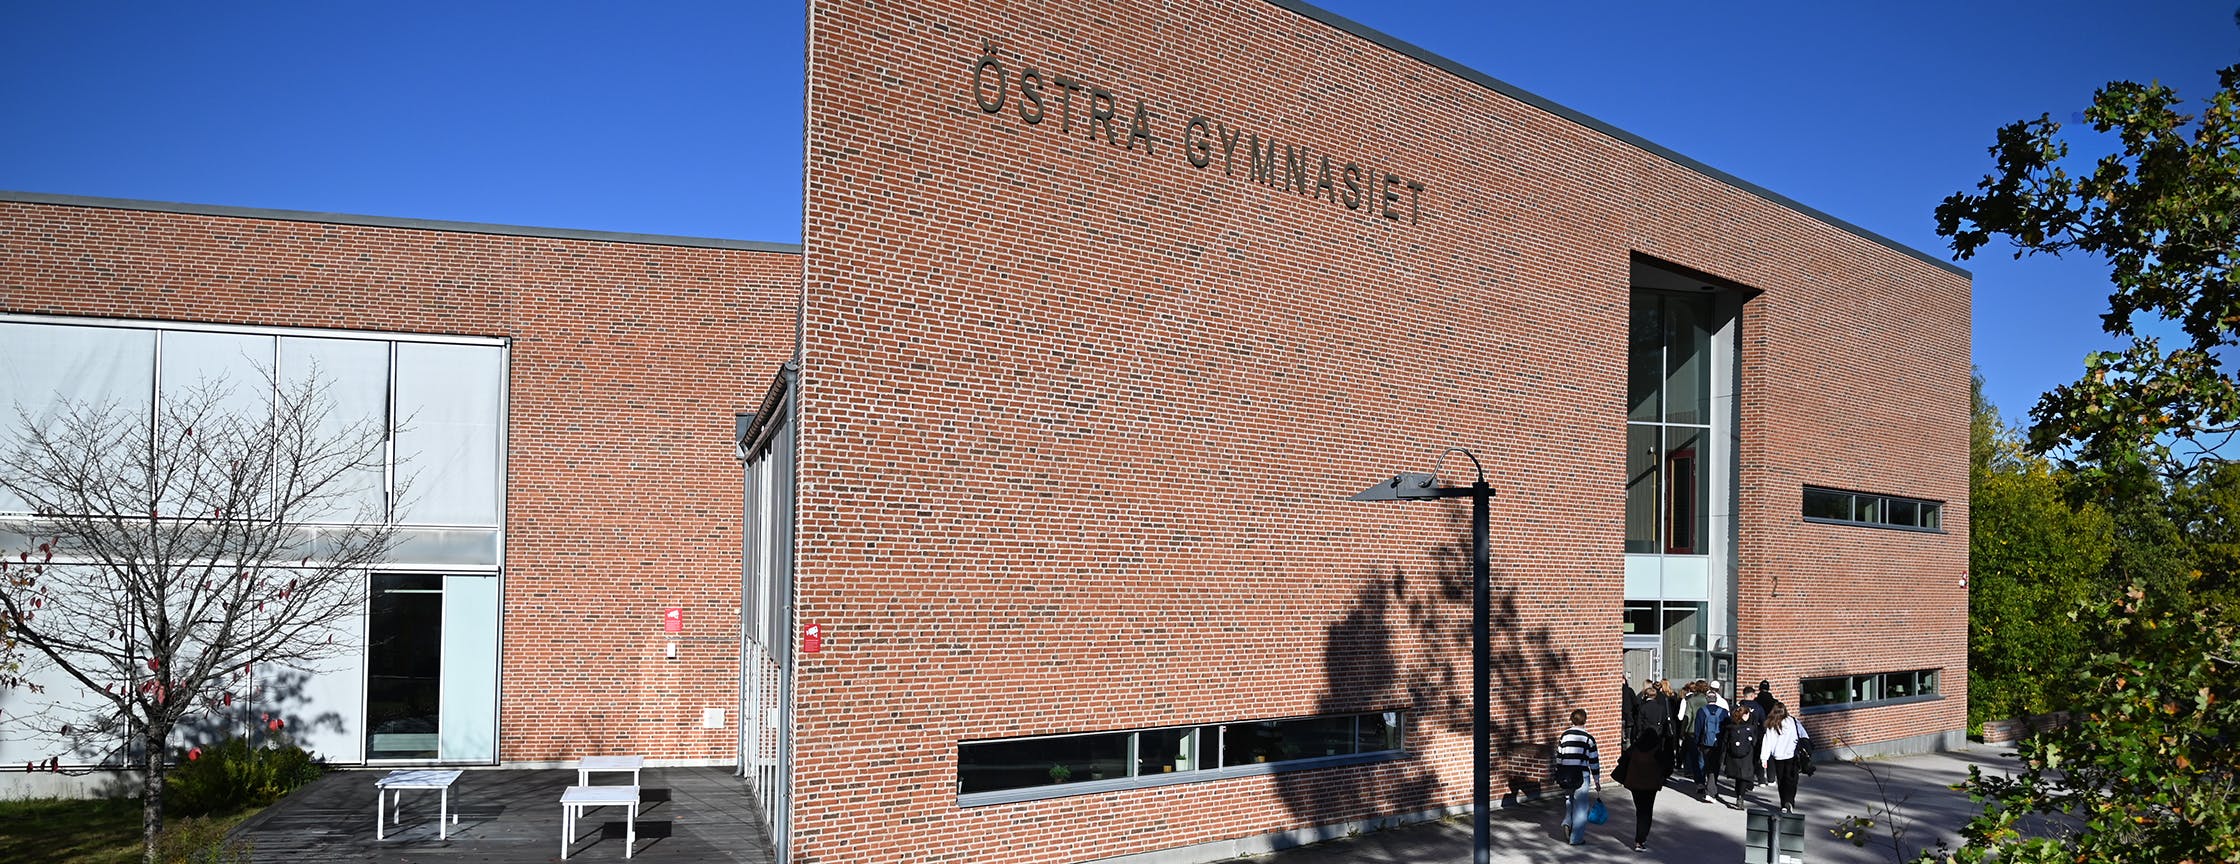 Östra gymnasiets skolbyggnad.